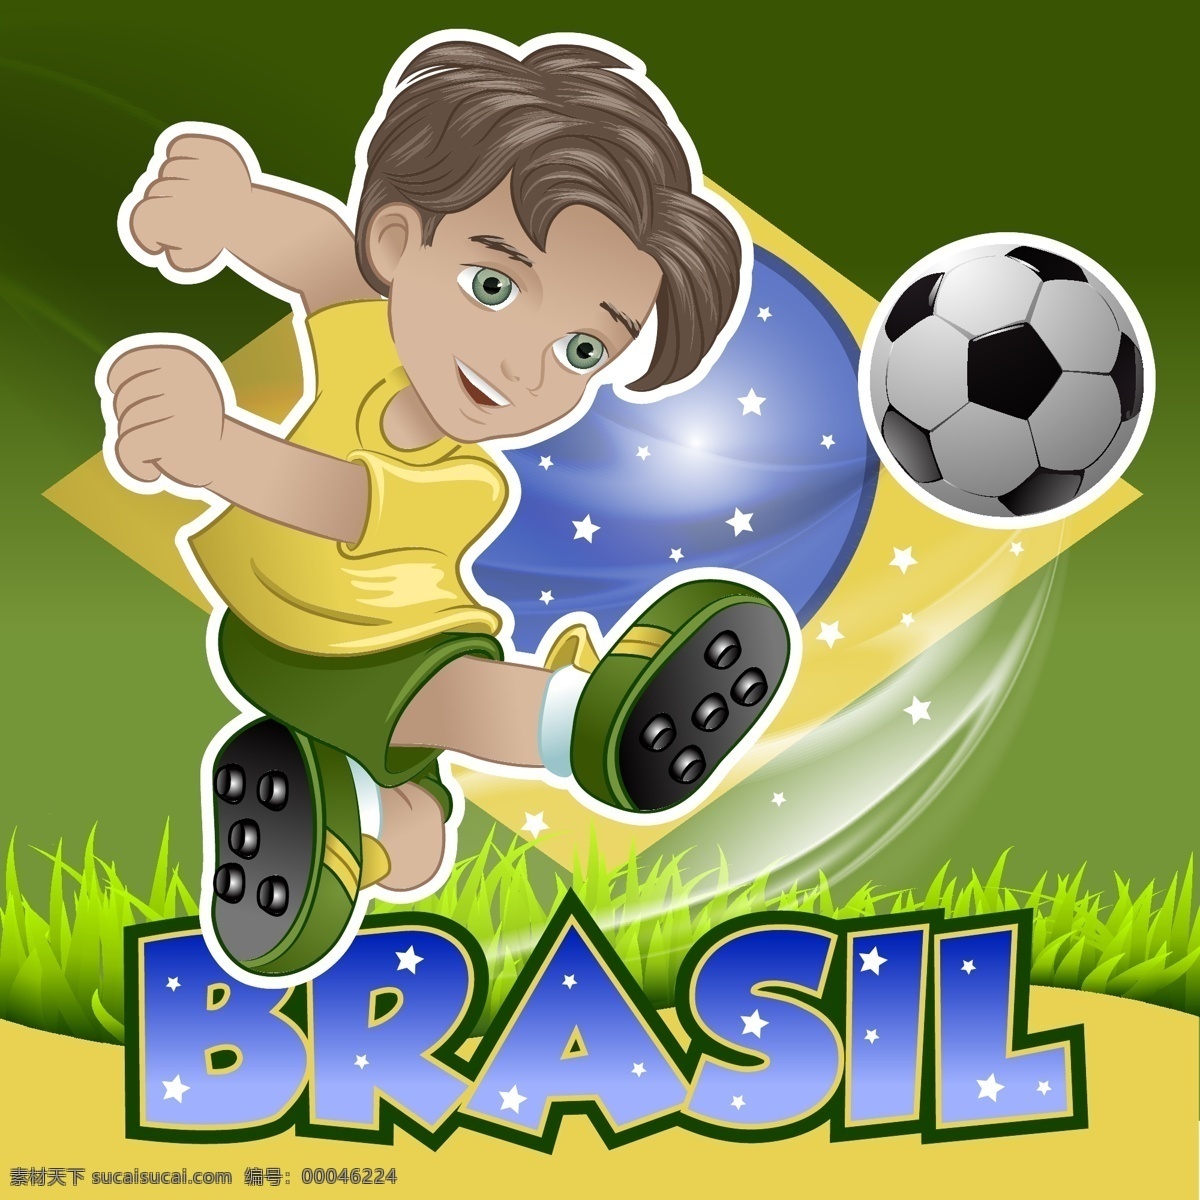 剪影 卡通 世界杯 手绘 踢足球 体育 体育运动 文化艺术 运动员 巴西 矢量 模板下载 足球 足球比赛 矢量图 日常生活